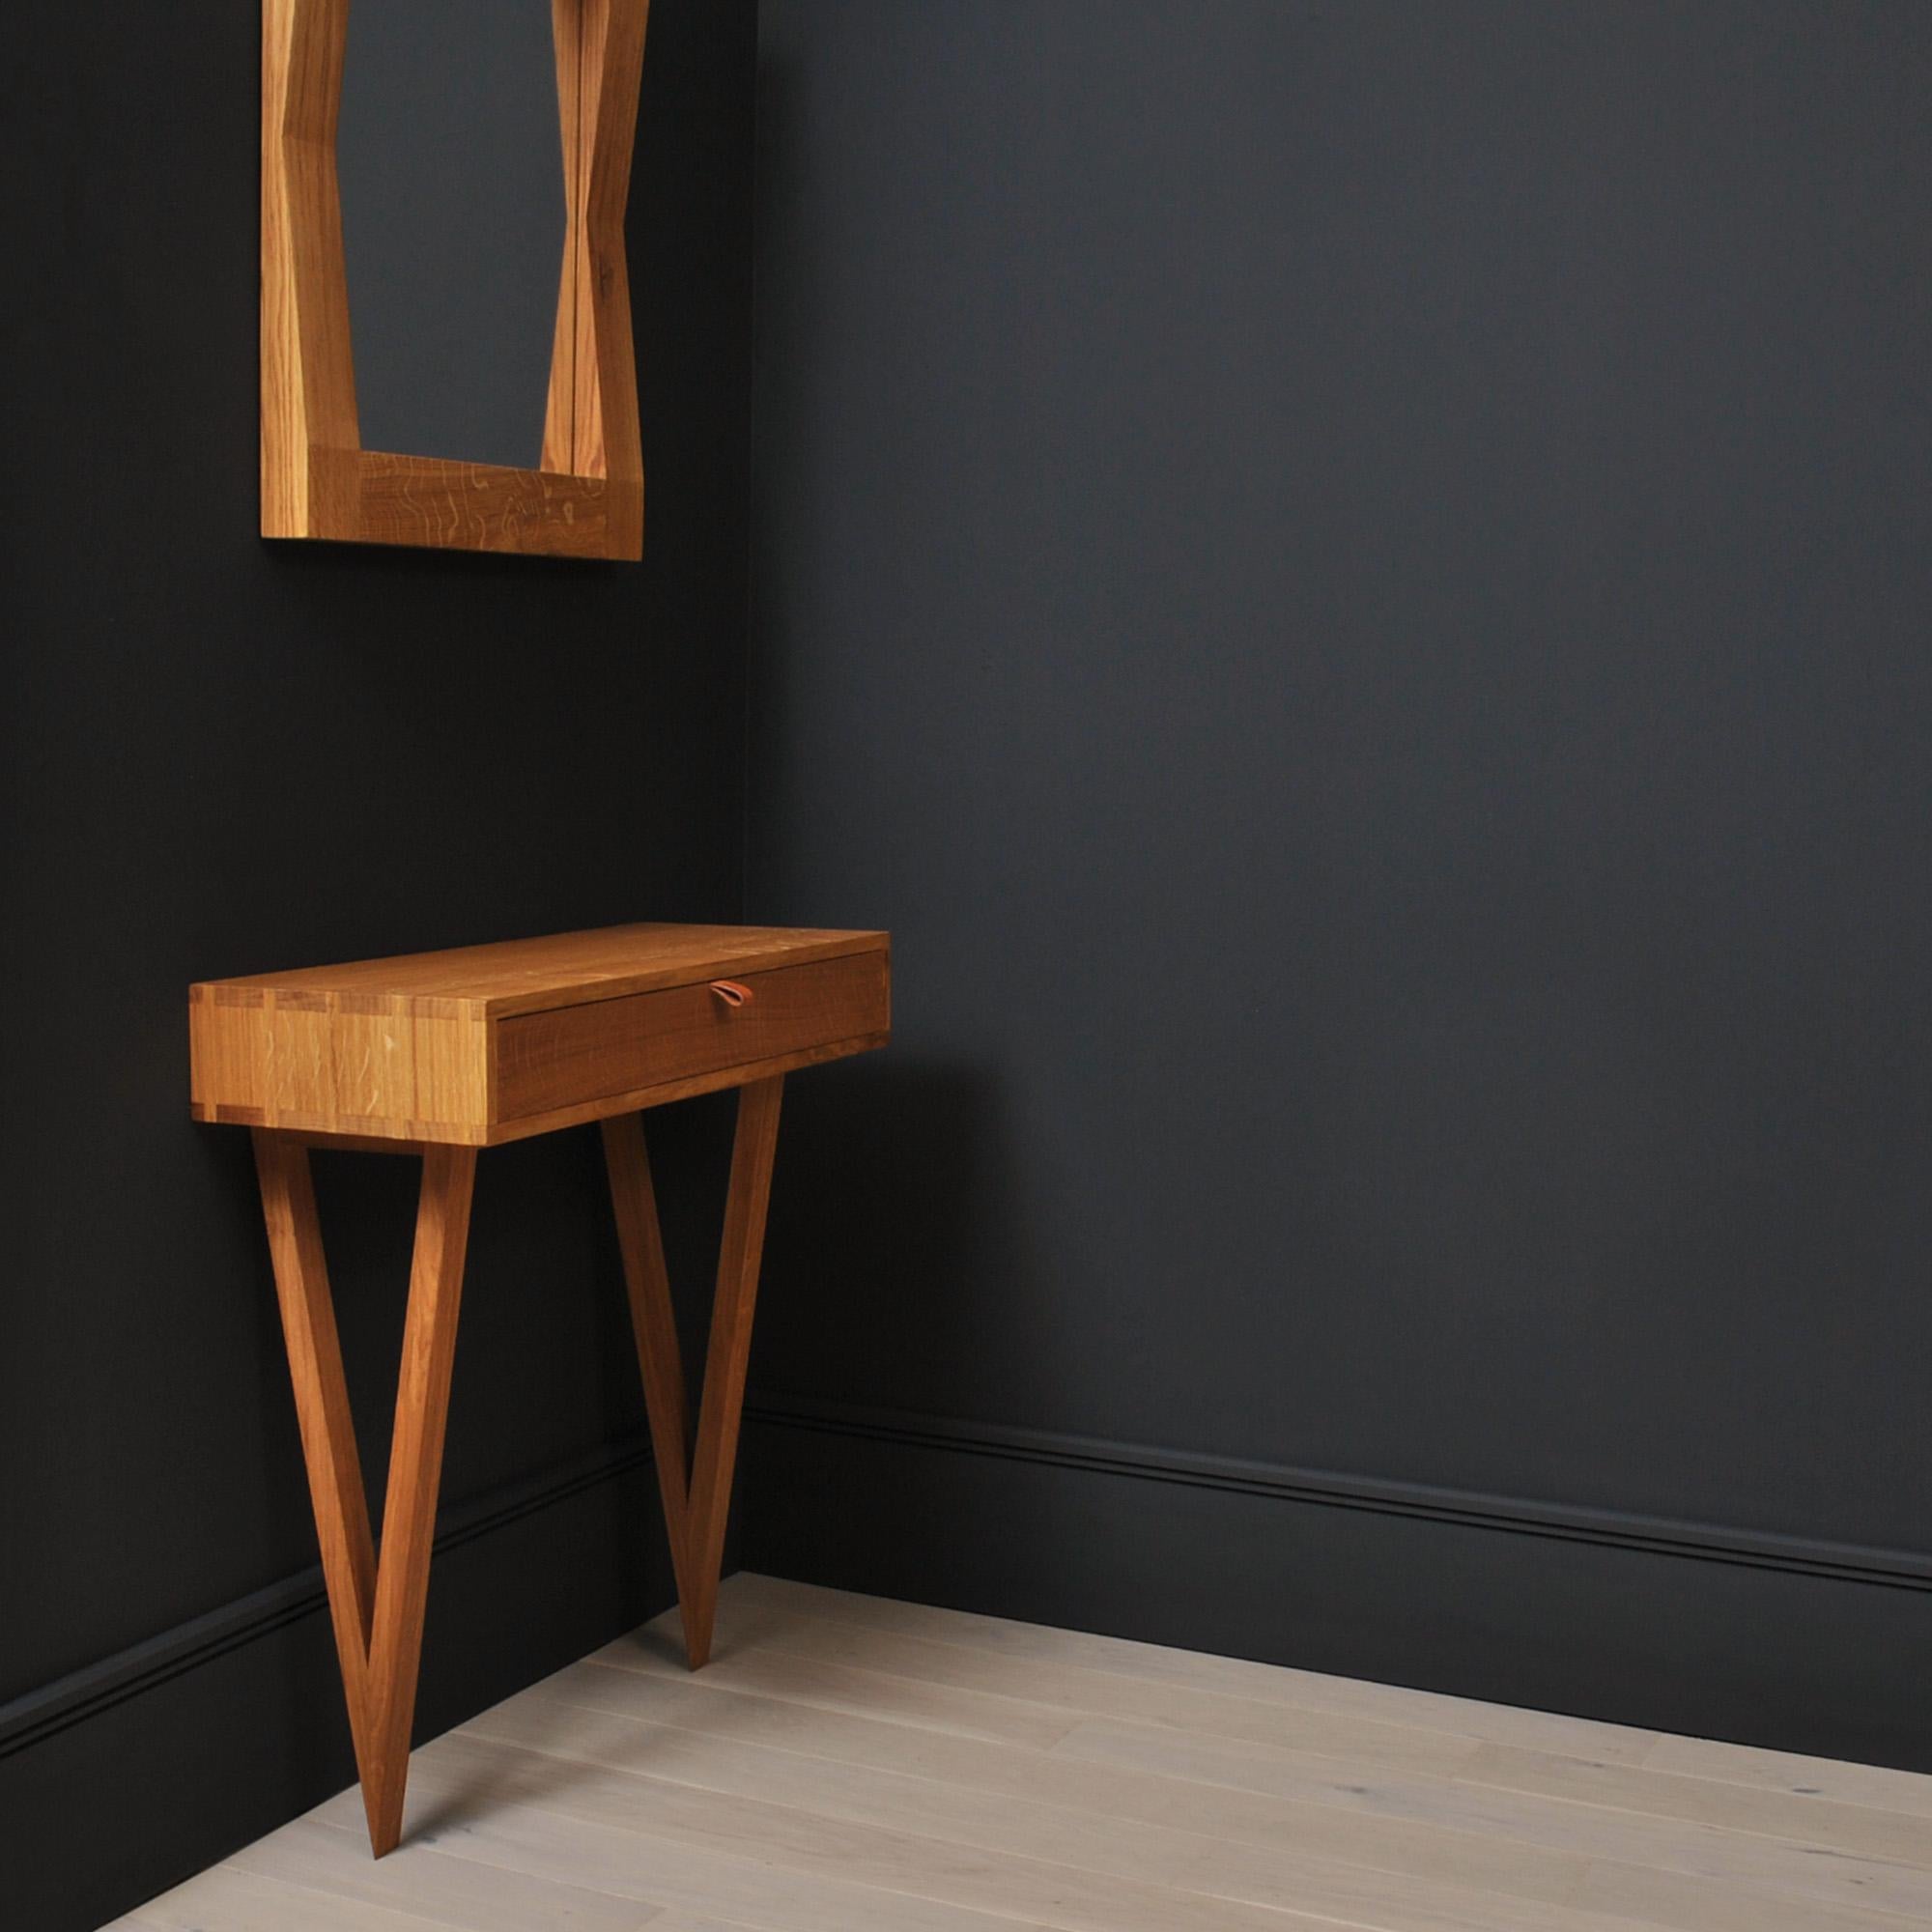 Table de toilette moderniste conçue et fabriquée à la main en Angleterre selon des techniques traditionnelles de fabrication de meubles. Entièrement fabriqué à la main à partir de chêne anglais scié sur quartier. Joints à queue d'aronde à la main